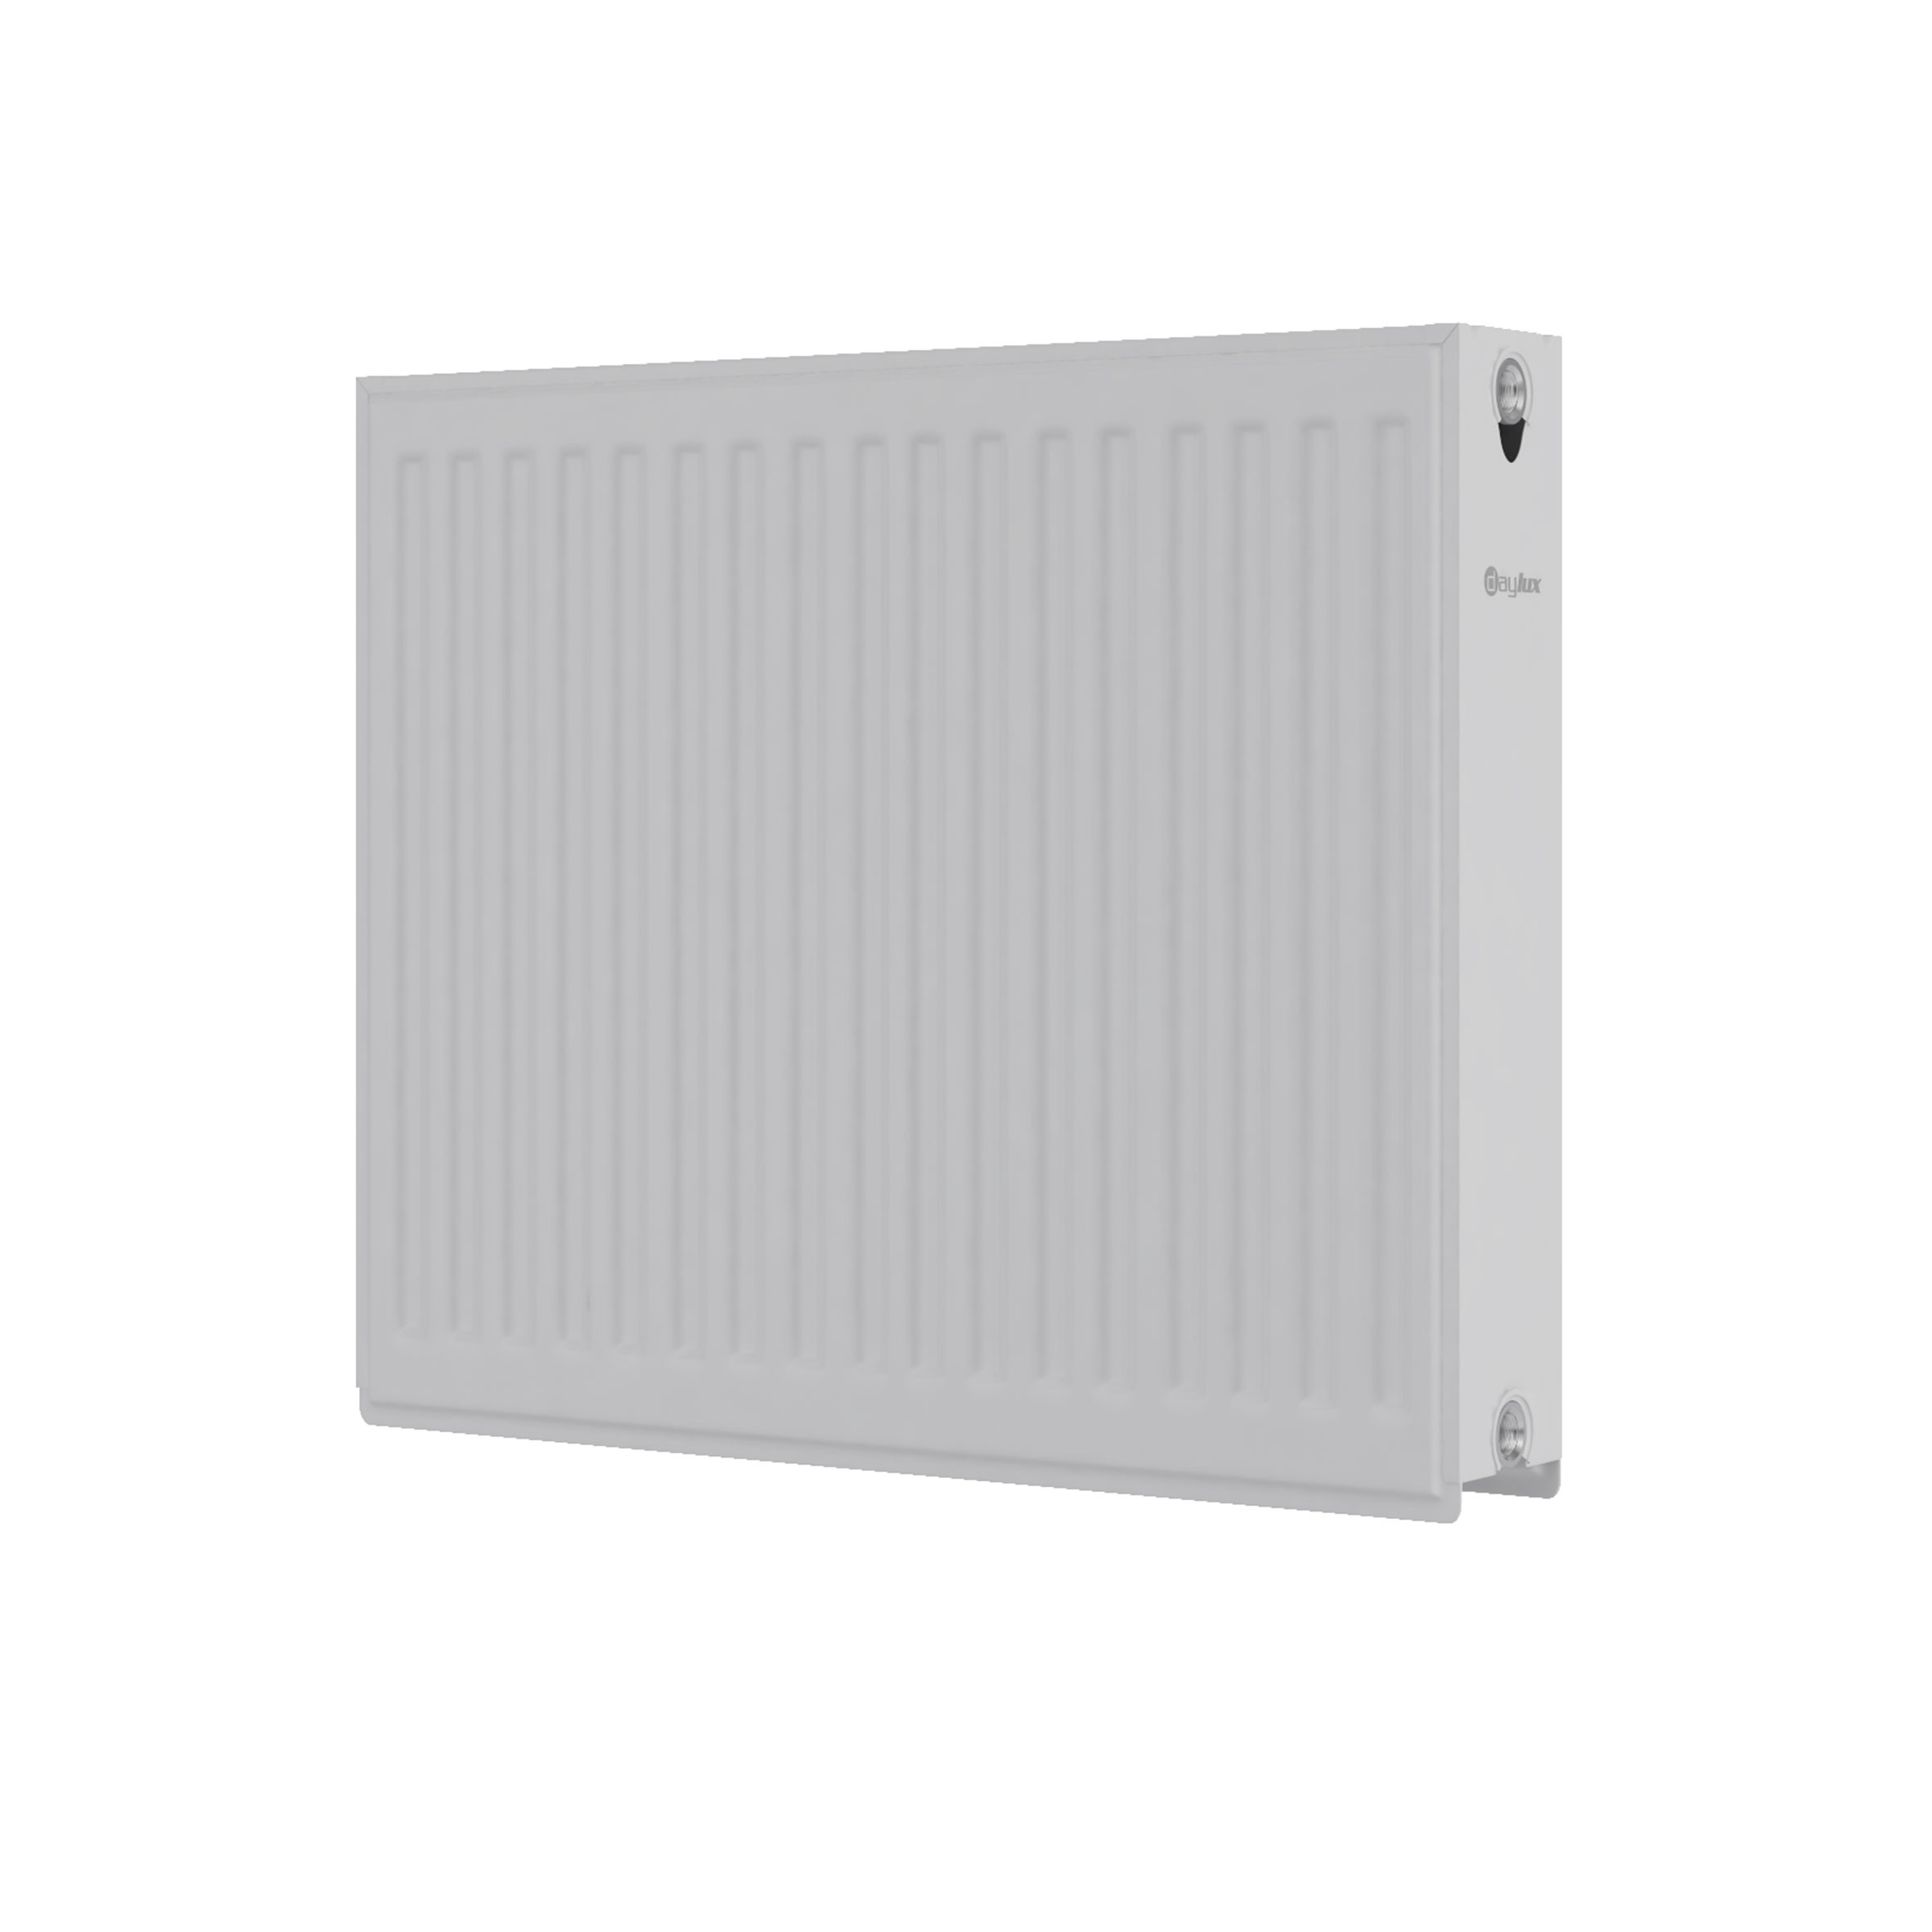 Радиатор для отопления Daylux 22 500x900 (нижнее подключение) цена 2615 грн - фотография 2